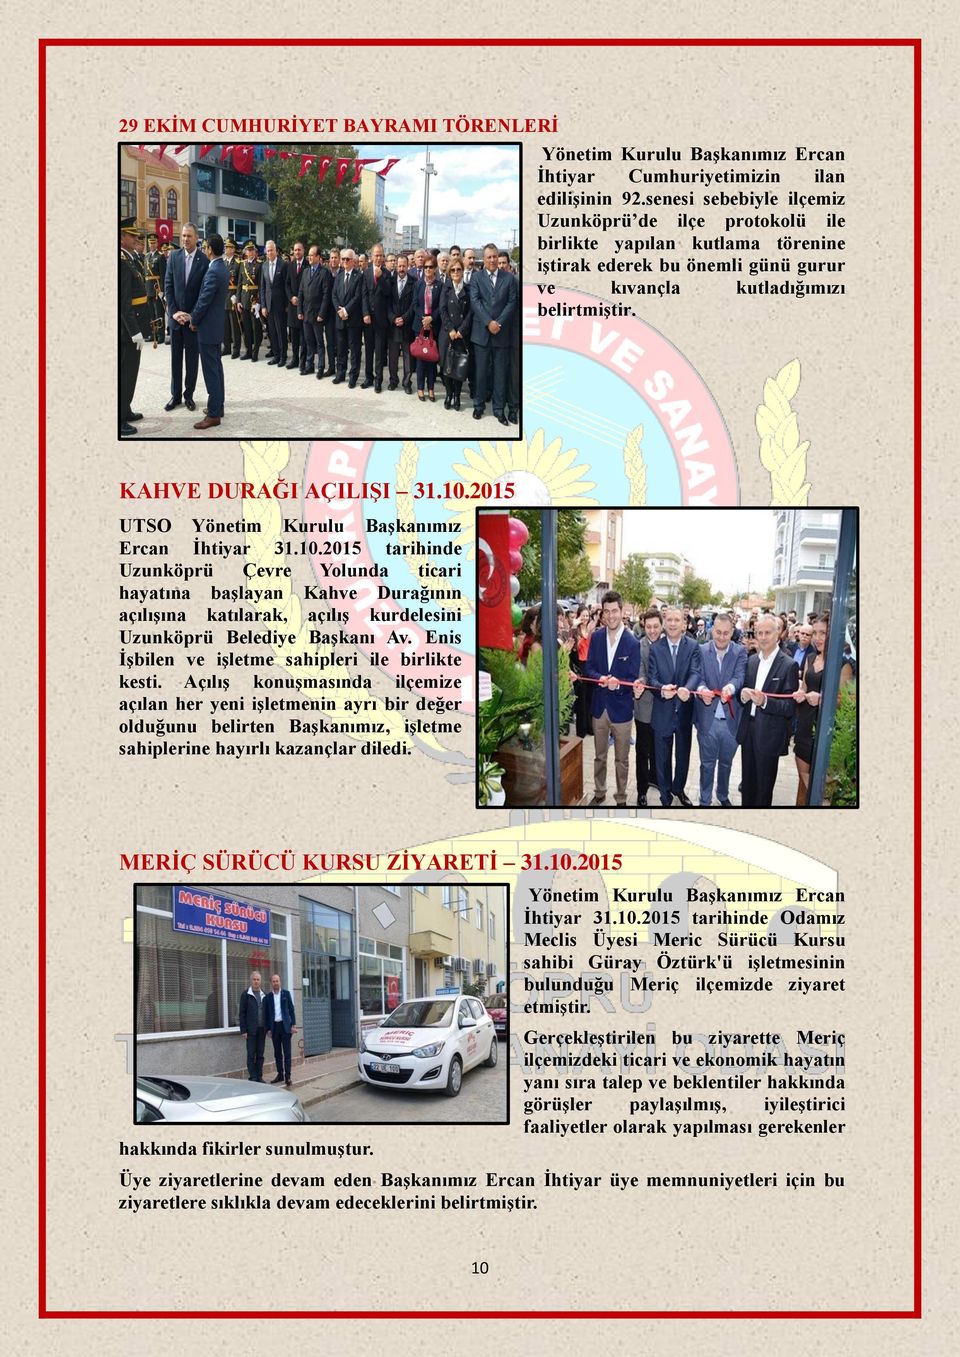 2015 UTSO Yönetim Kurulu Başkanımız Ercan İhtiyar 31.10.